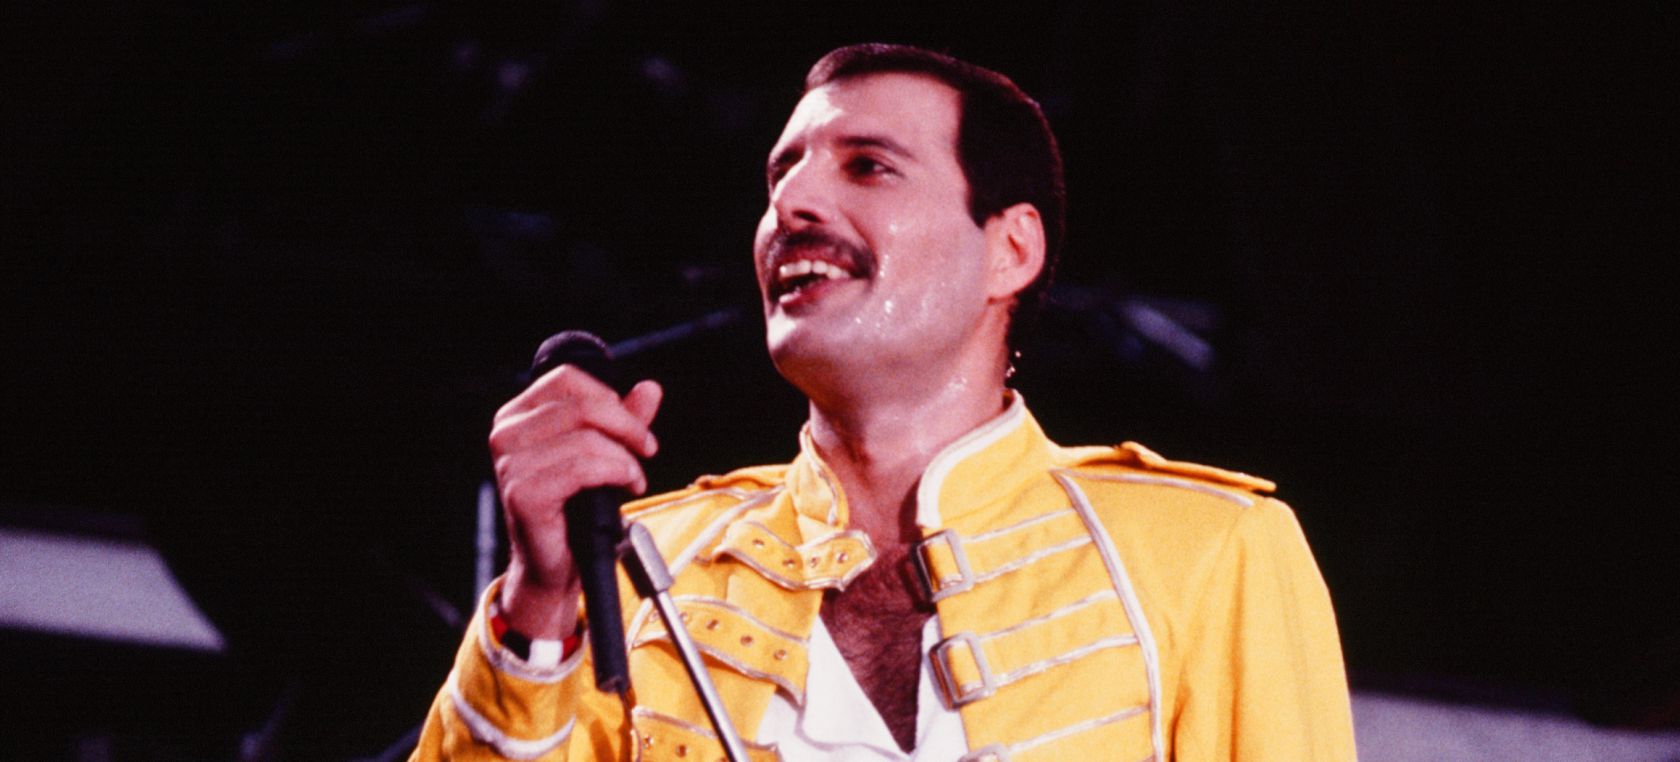 El último concierto de Freddie Mercury con Queen: “¡Mi cuerpo entero está destrozado de dolor!”